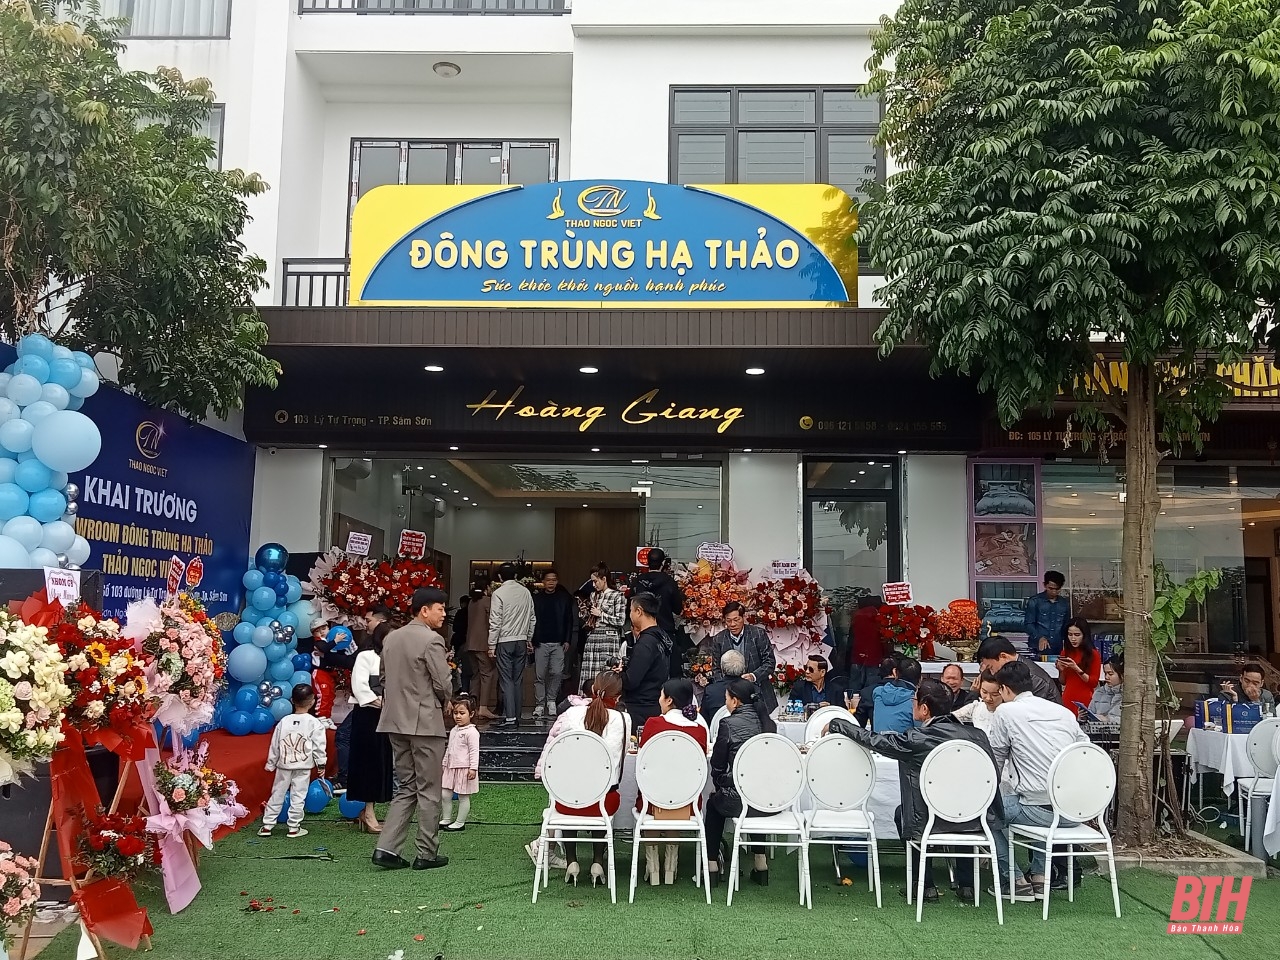 Khai trương showroom Đông trùng hạ thảo Thảo Ngọc Việt tại Sầm Sơn